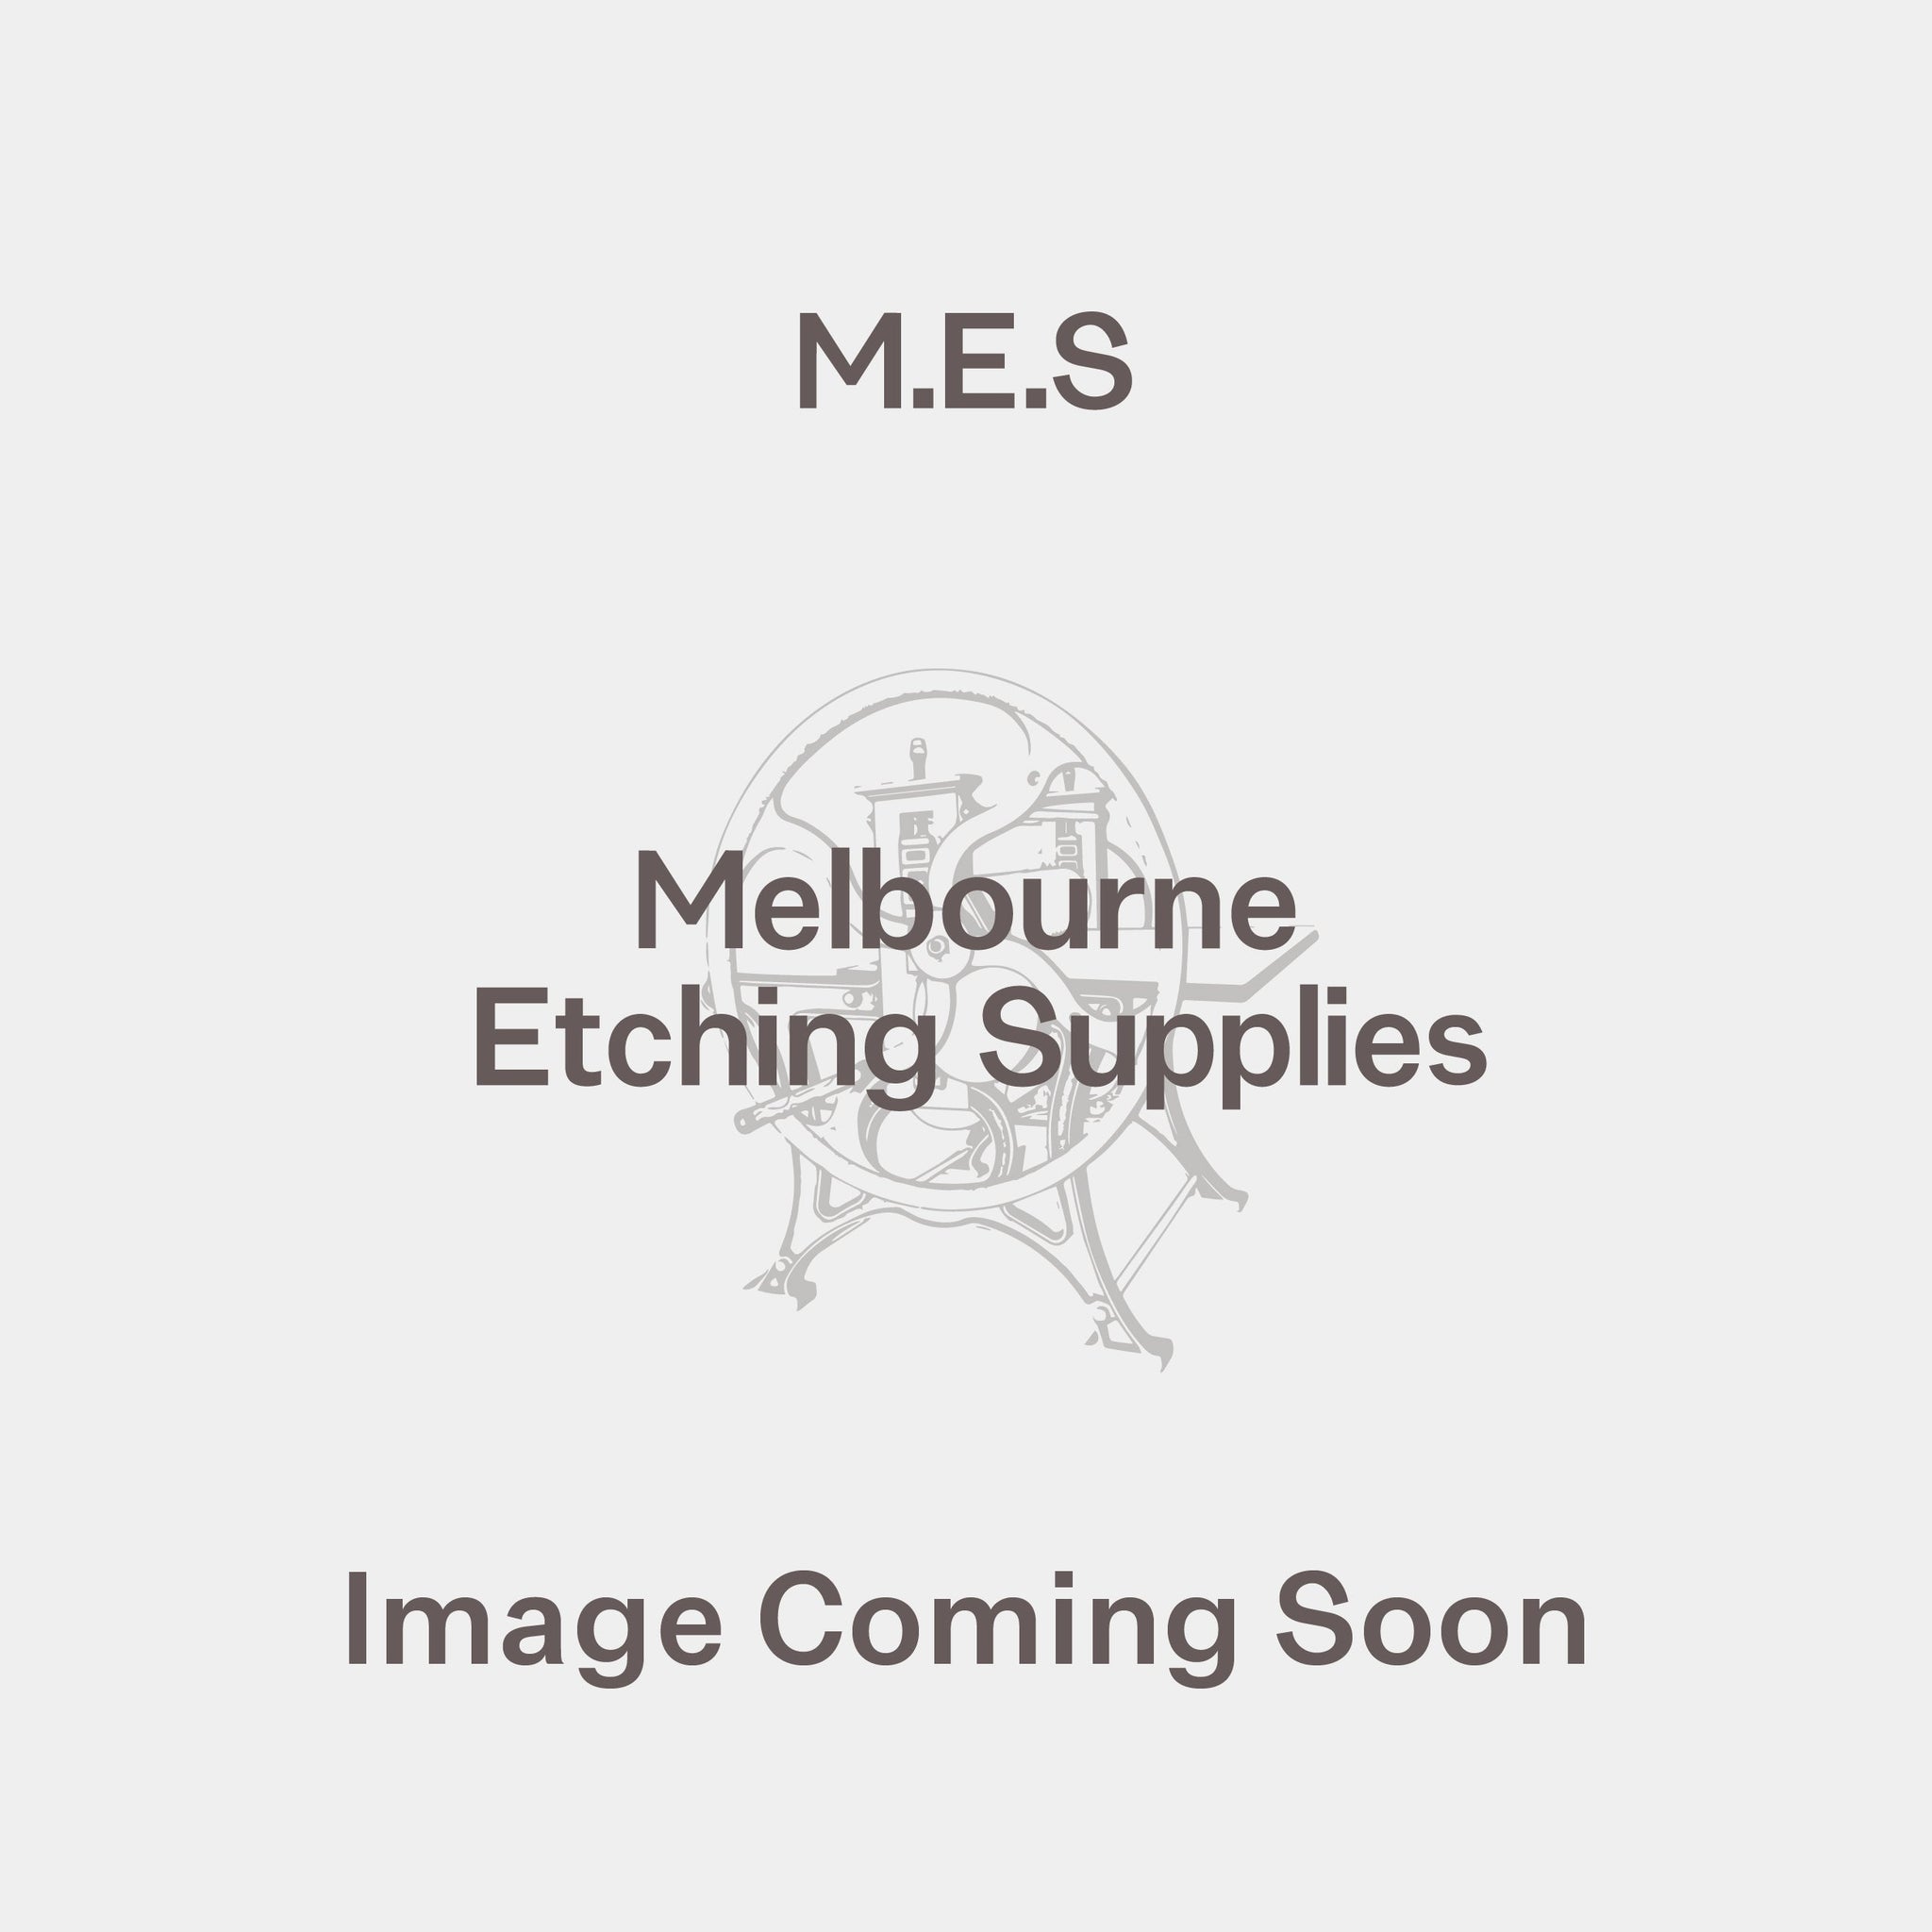 Belgium Linen #14 Medium/Fine, 216cm wide (price per metre) - Melbourne Etching Supplies